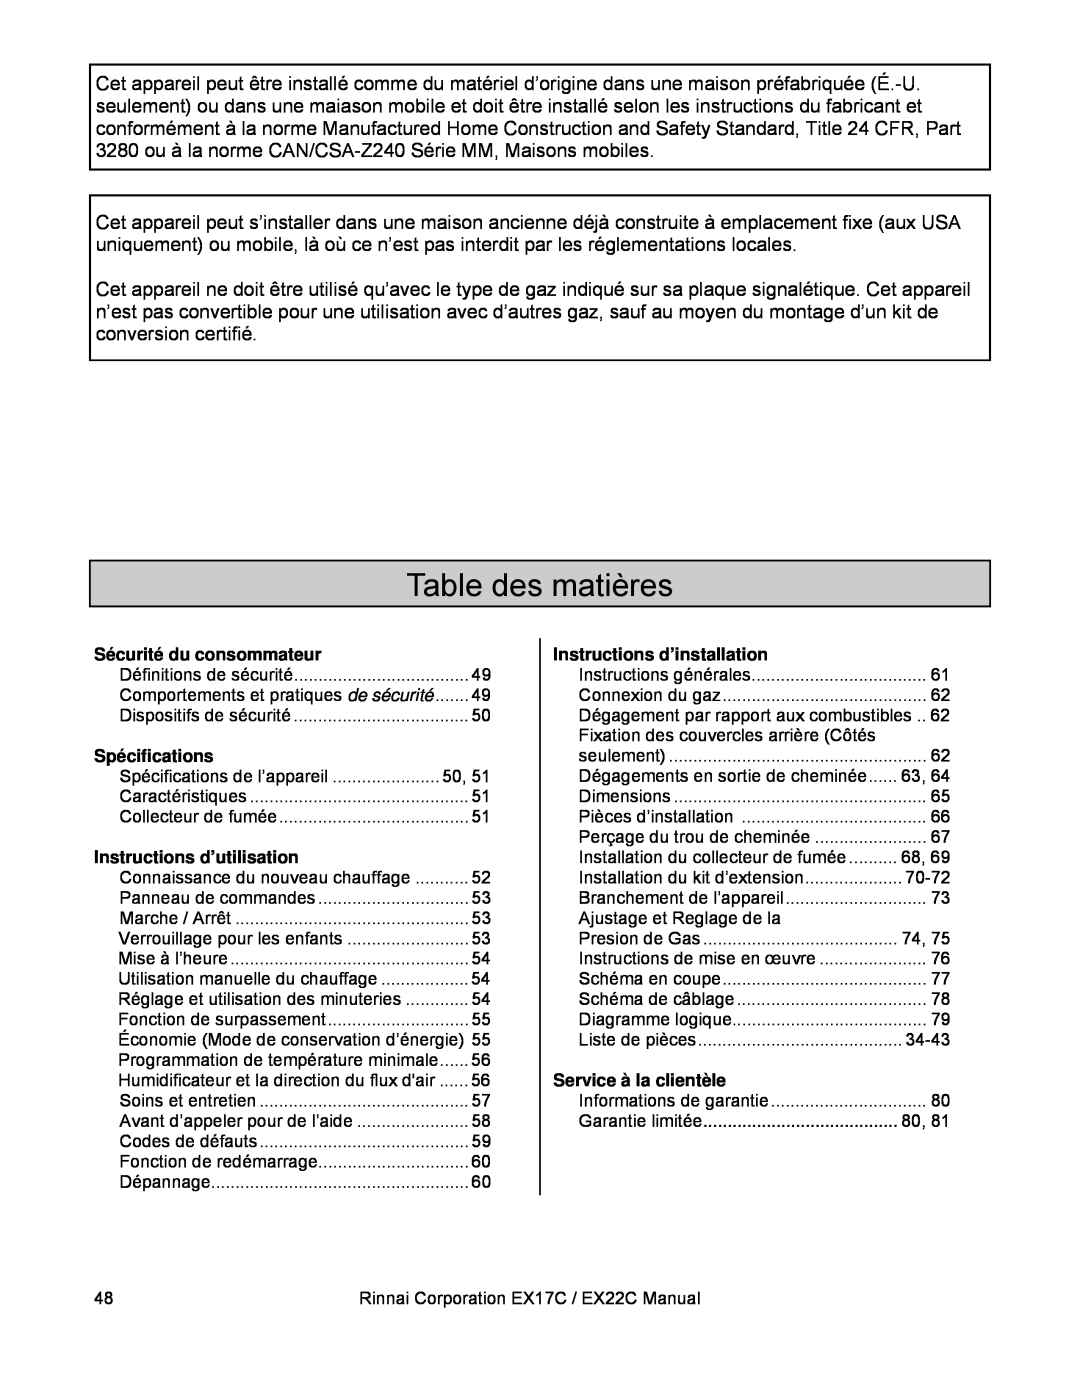 Rinnai EX22C (RHFE-559FTA) Table des matières, Sécurité du consommateur, Spécifications, Instructions d’utilisation 